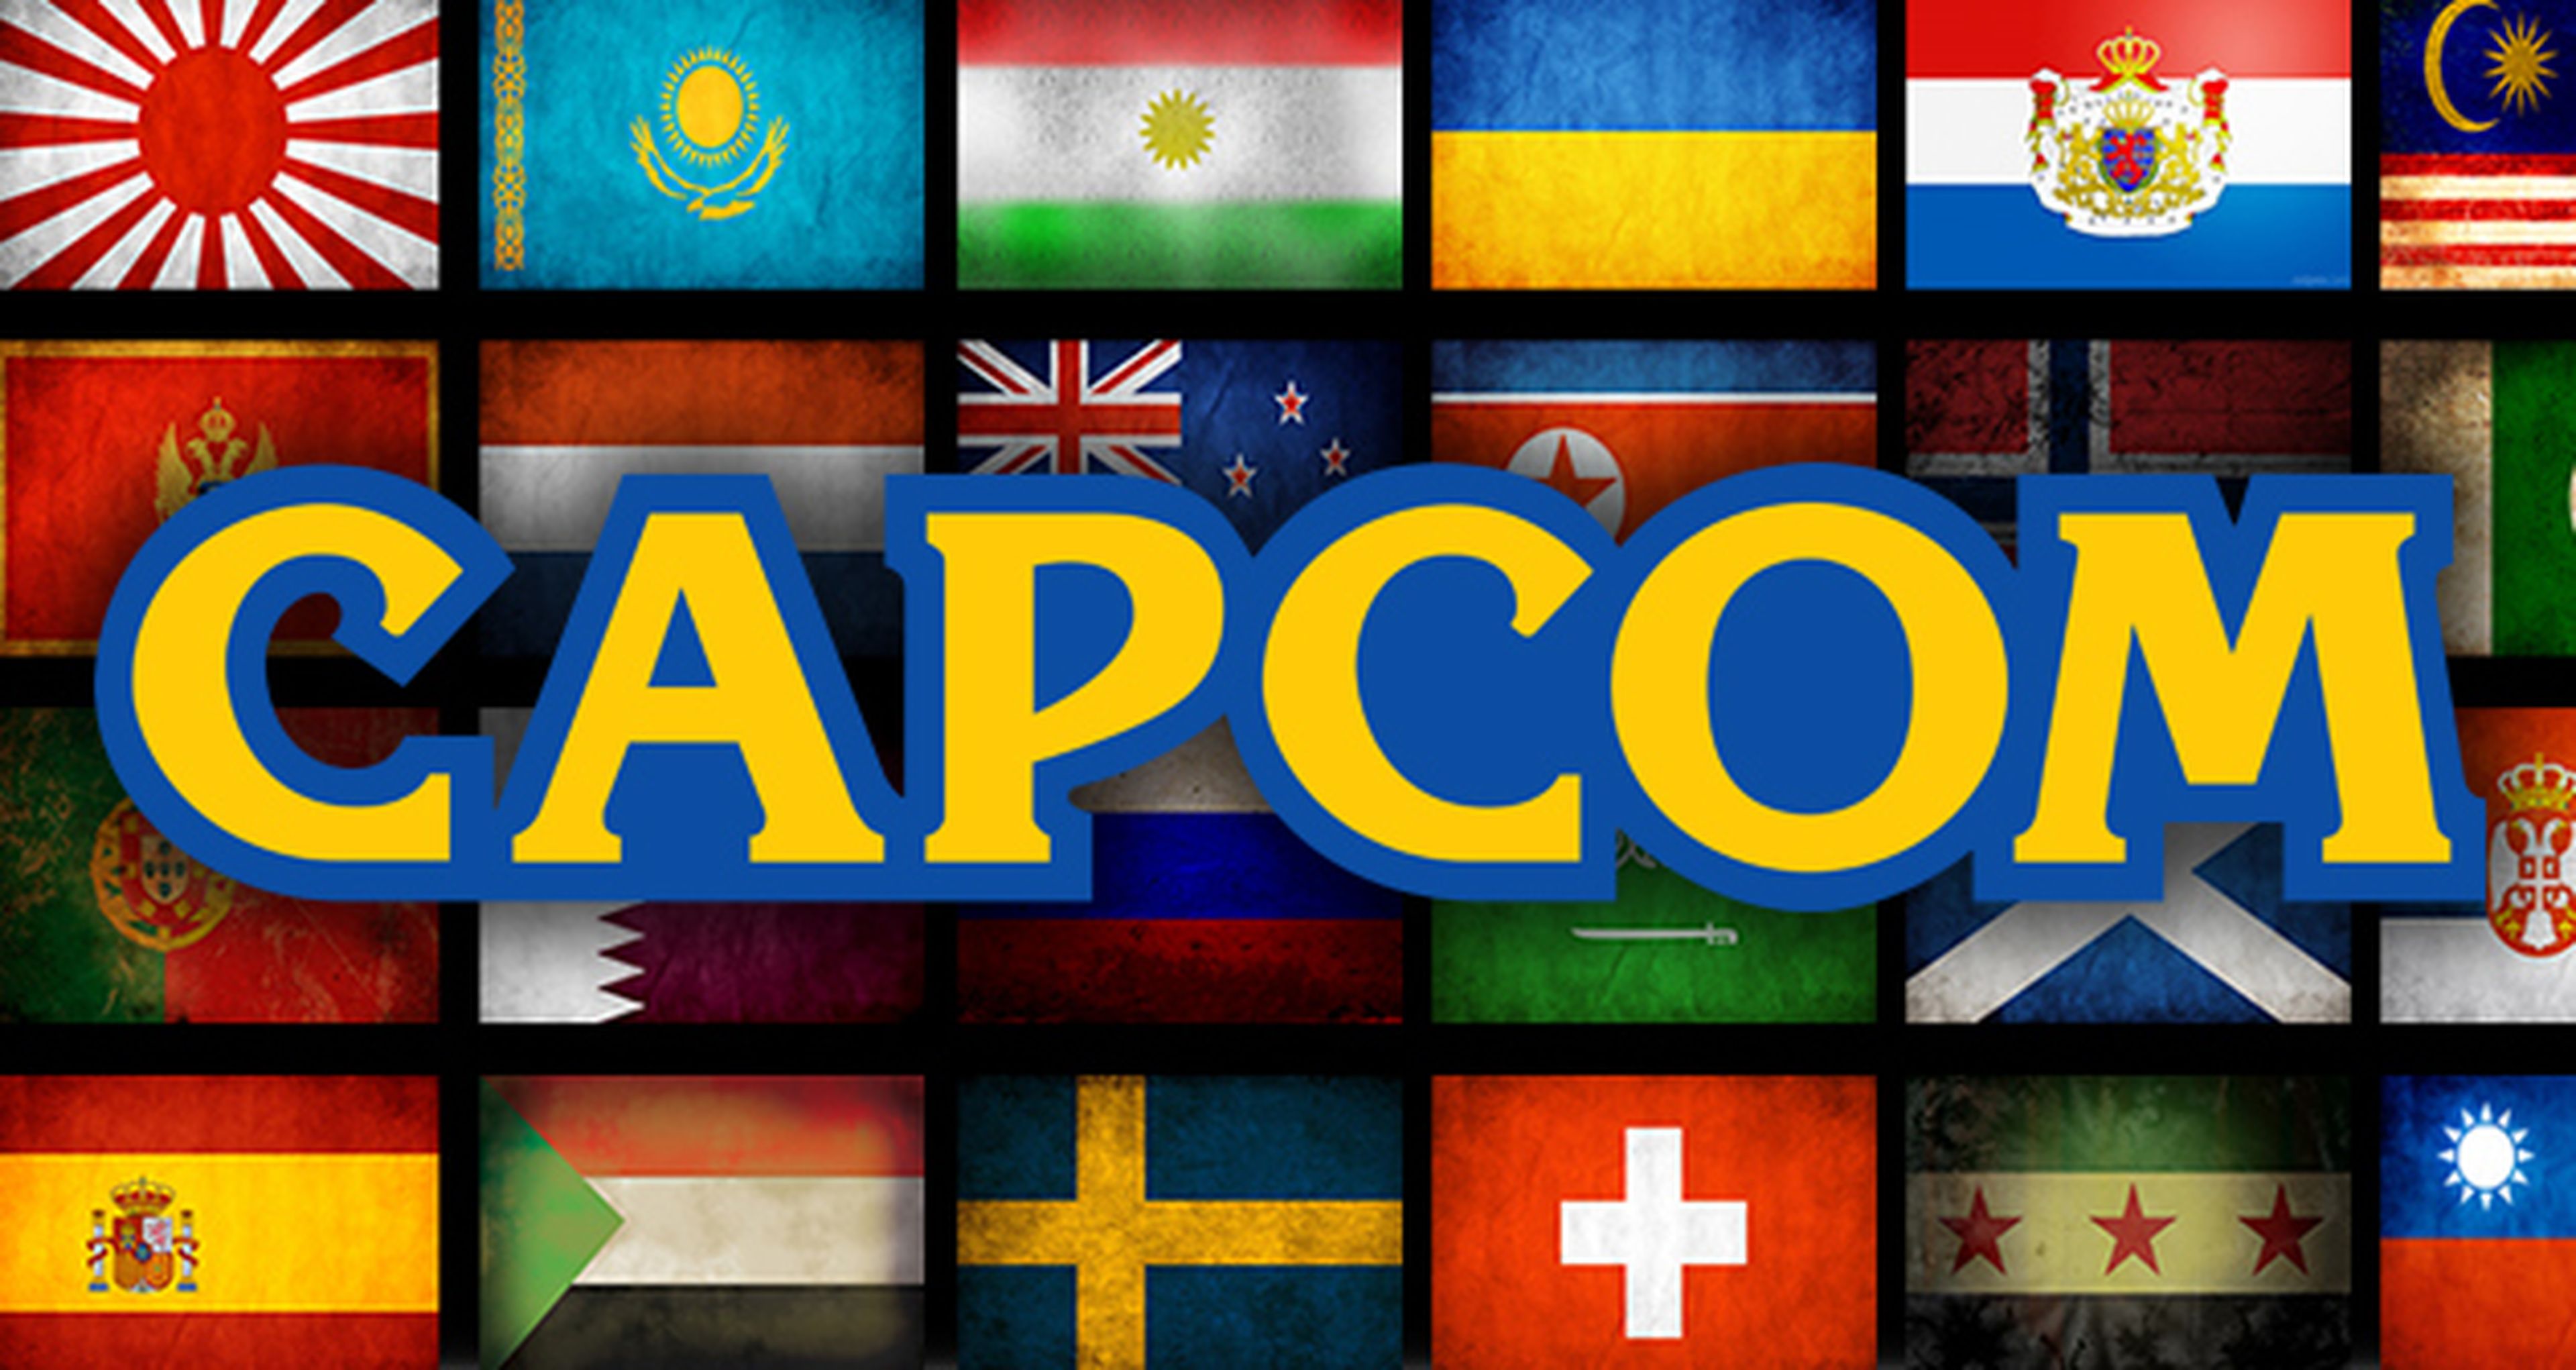 Capcom traducirá más juegos en 2013